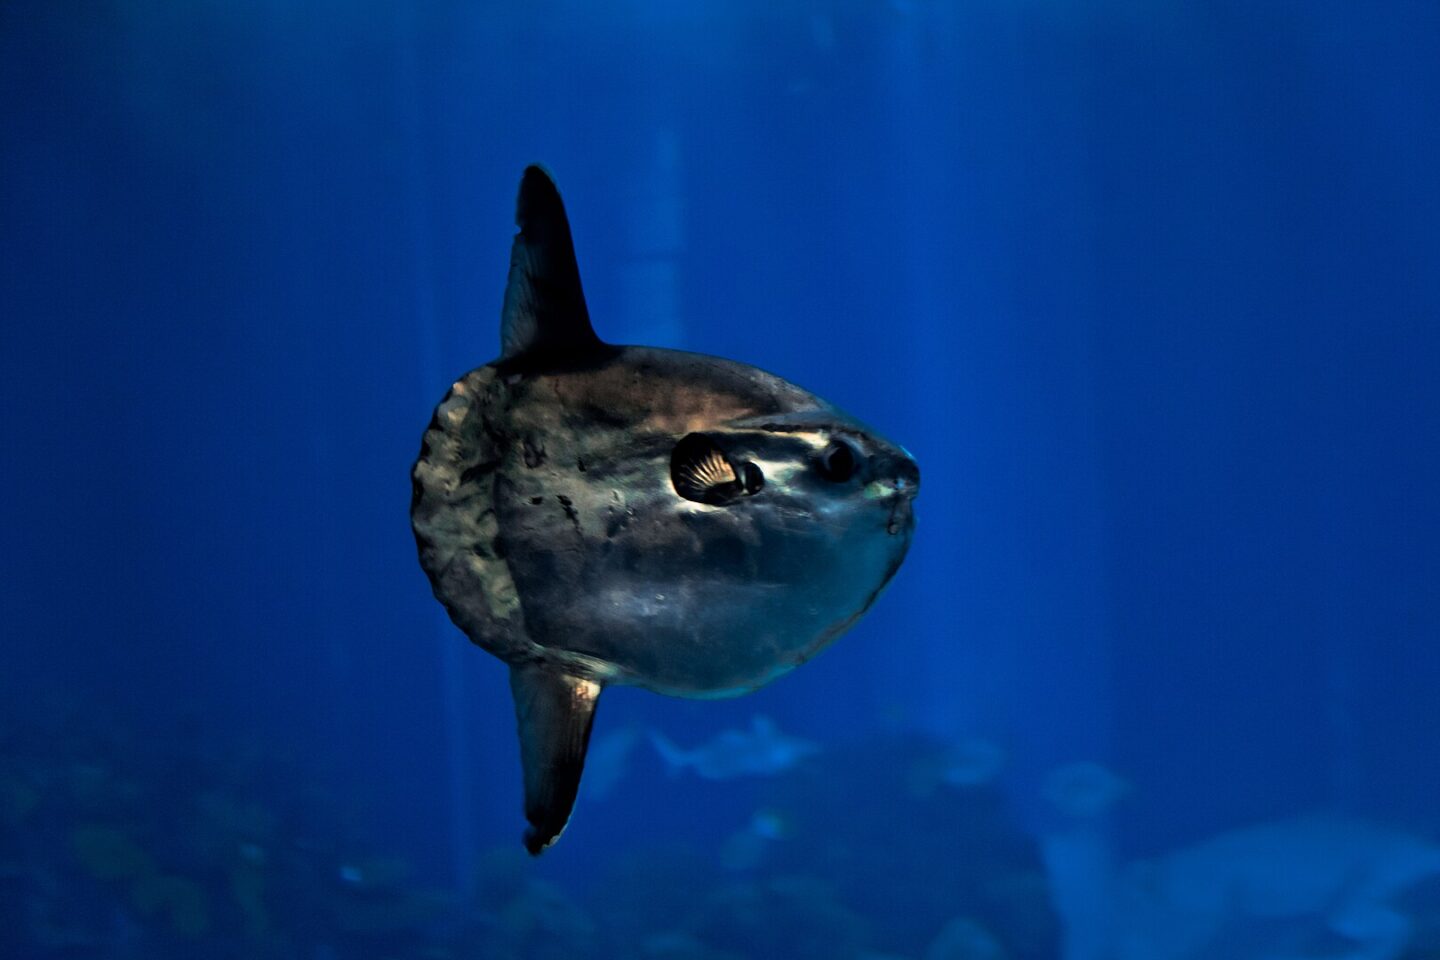 Das Foto zeigt einen Mondfisch, lateinisch mola mola, der in dunkelblauem Meerwasser schwimmt. Die Bildunterschrift dazu lautet: Haben auch etwas gemeinsam: Der Mondfisch und die Wikipedia. Beide sind riesig und exotisch. Foto: Yohann Cordelle, CC BY-SA 3.0 , via Wikimedia Commons